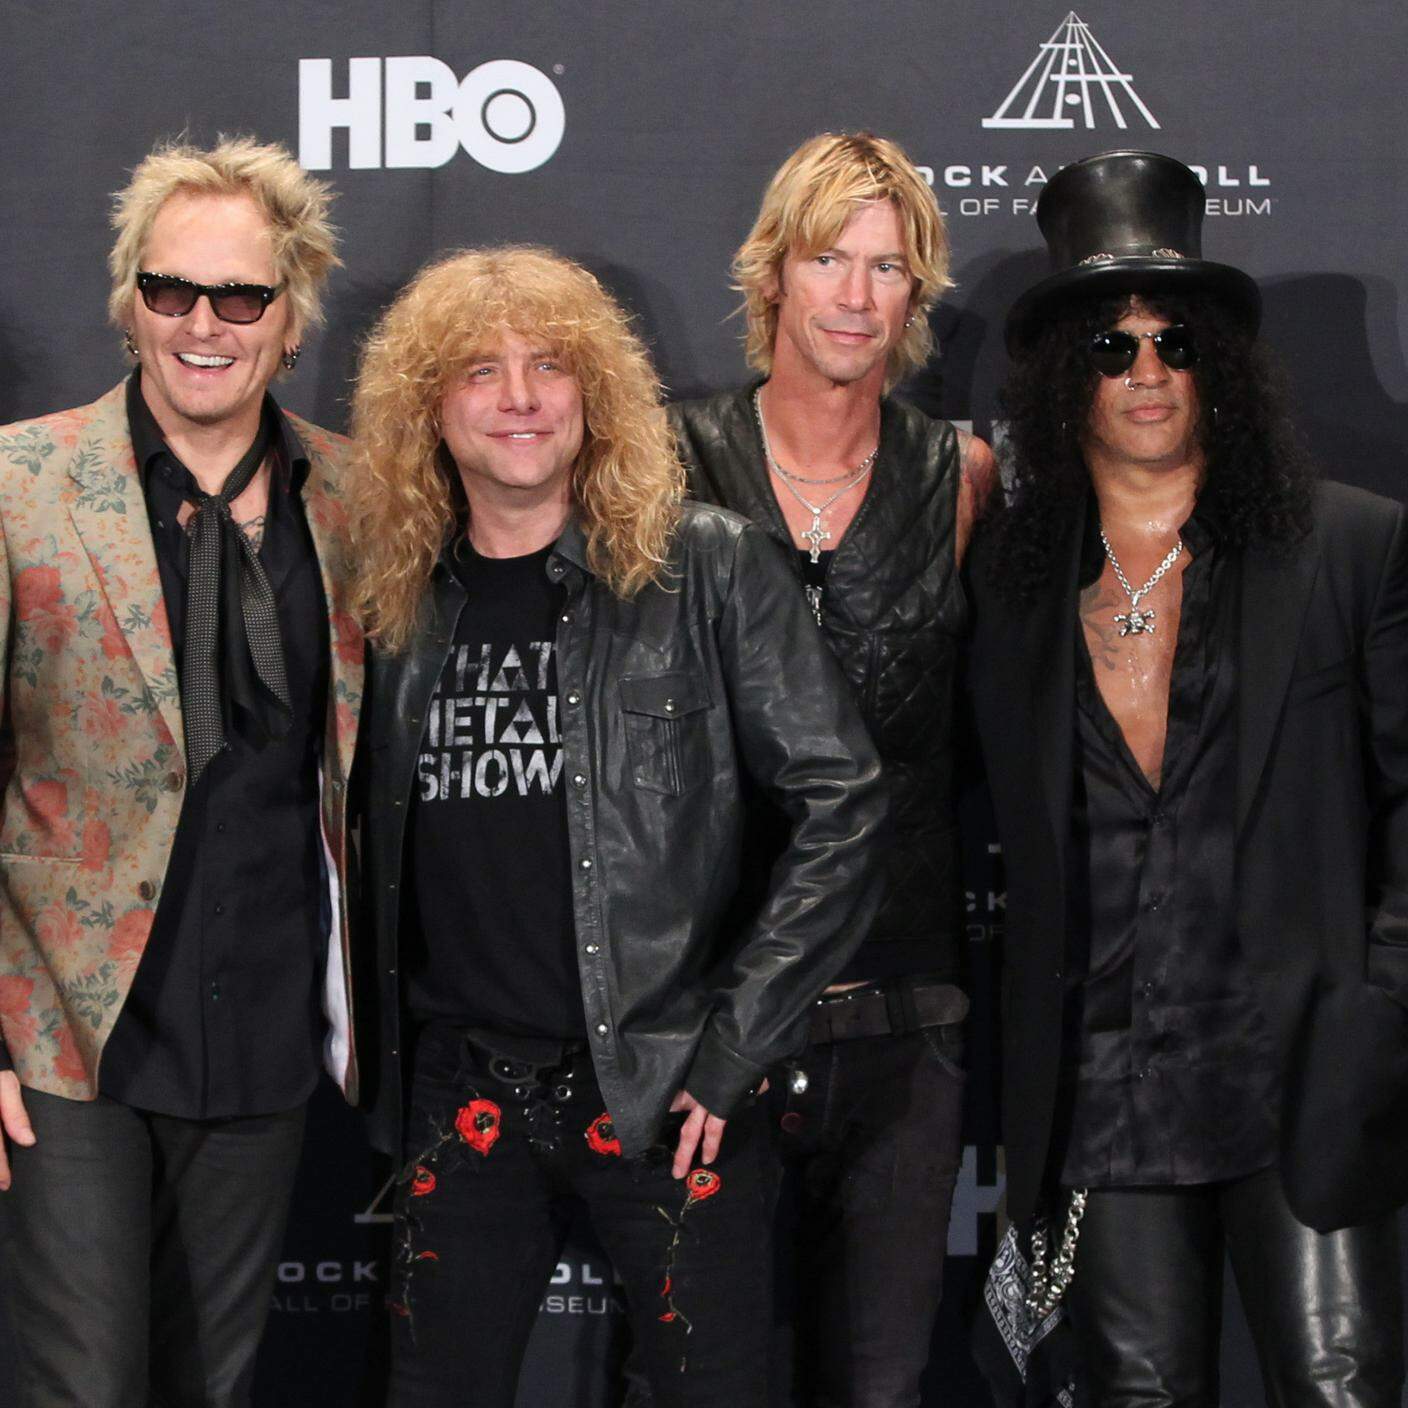 Matt Sorum, Steven Adler, Duff McKagan and Slash dei Guns N' Roses